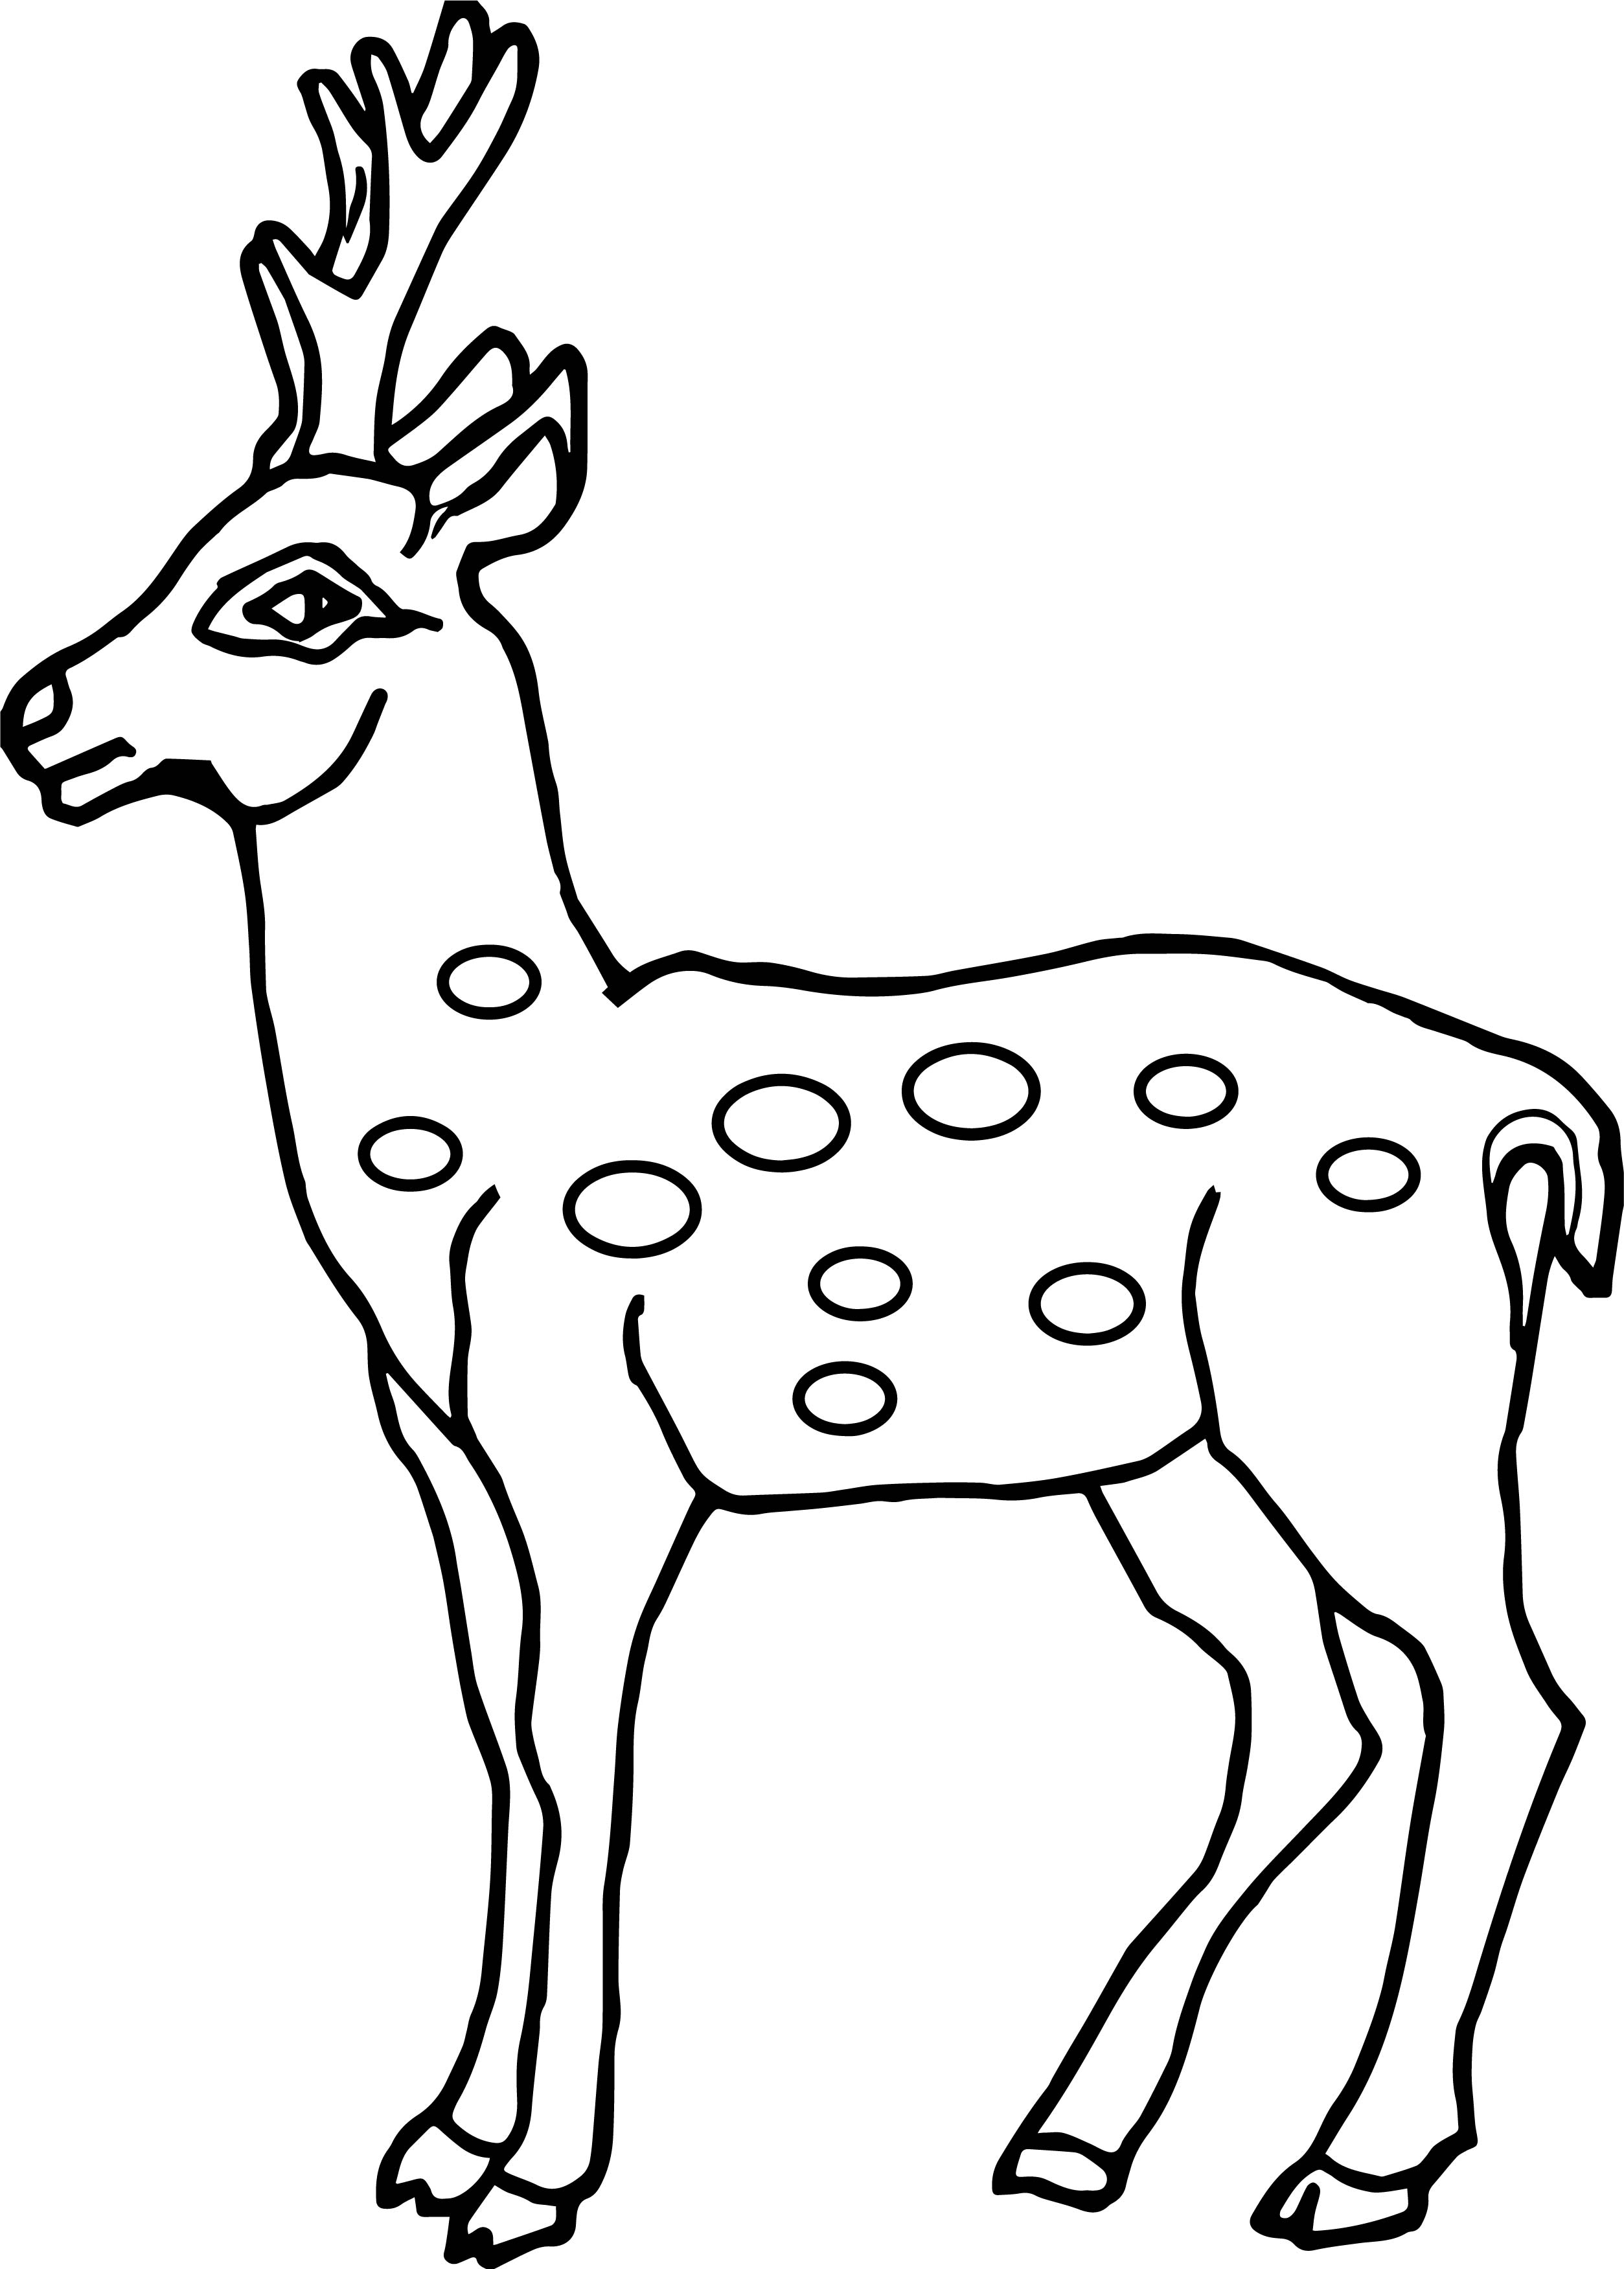 Deer Outline Drawing at GetDrawings Free download